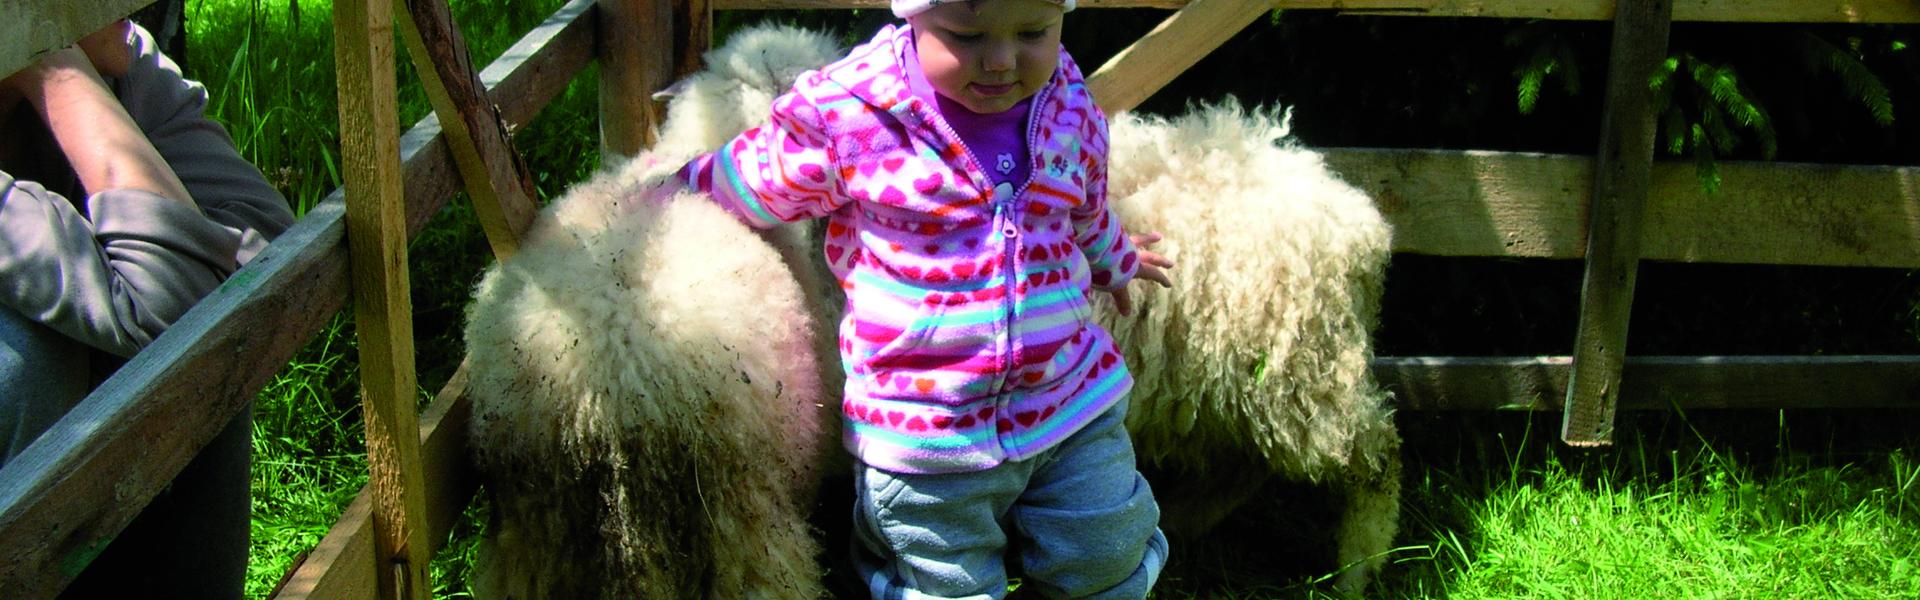 dziecko z małą owieczką